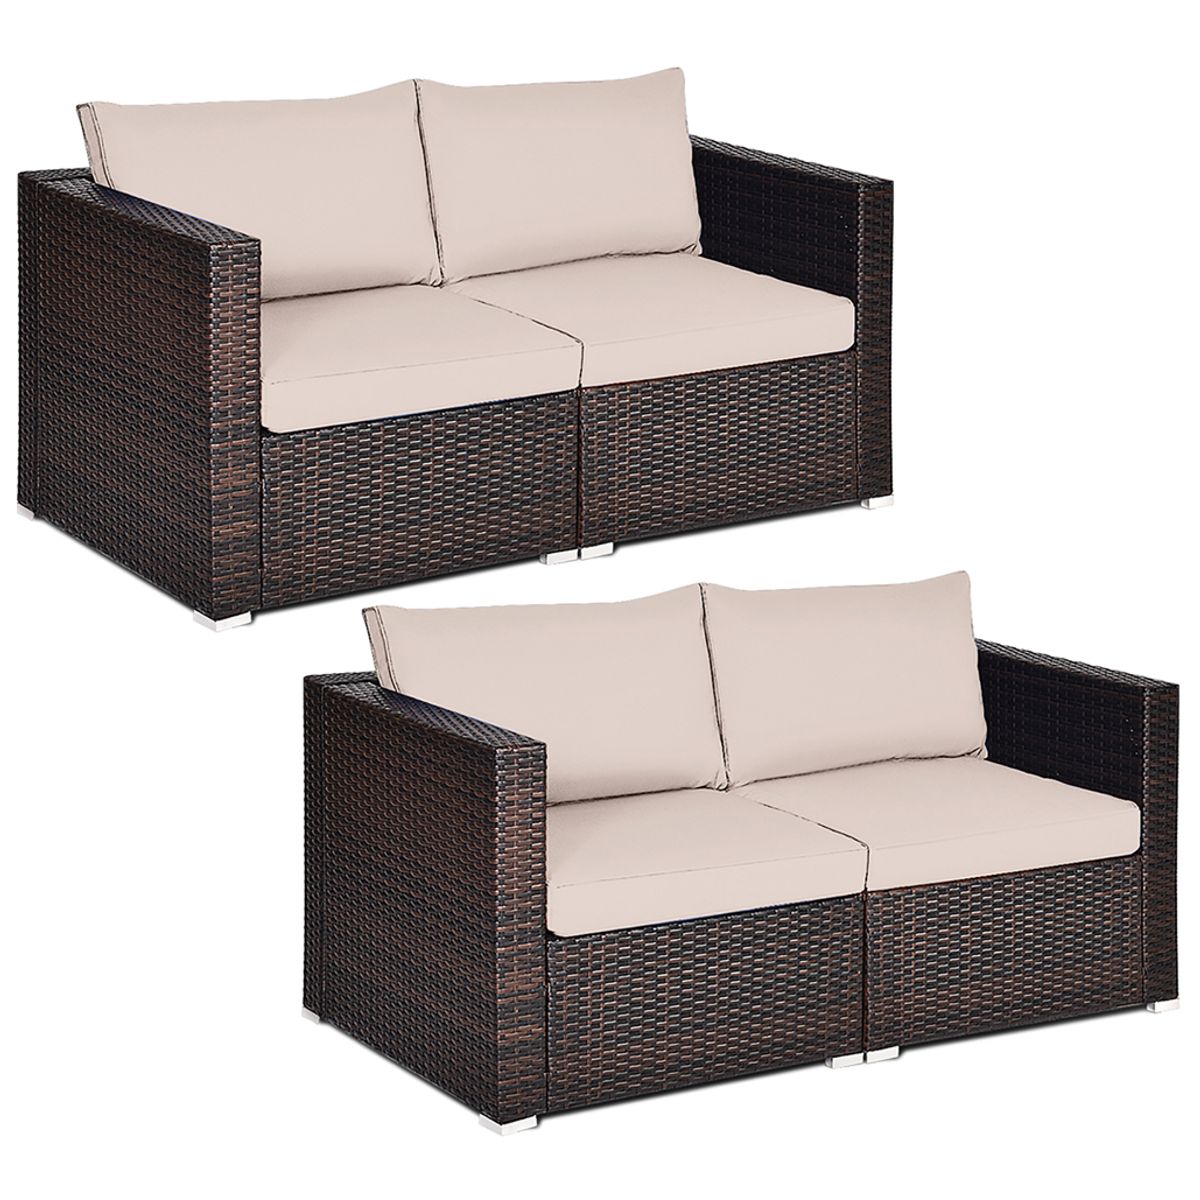 Photos - Garden Furniture Costway Rattan Outdoor 4-Piece Patio Sofa Set - Beige 2*HW63871BN+ 